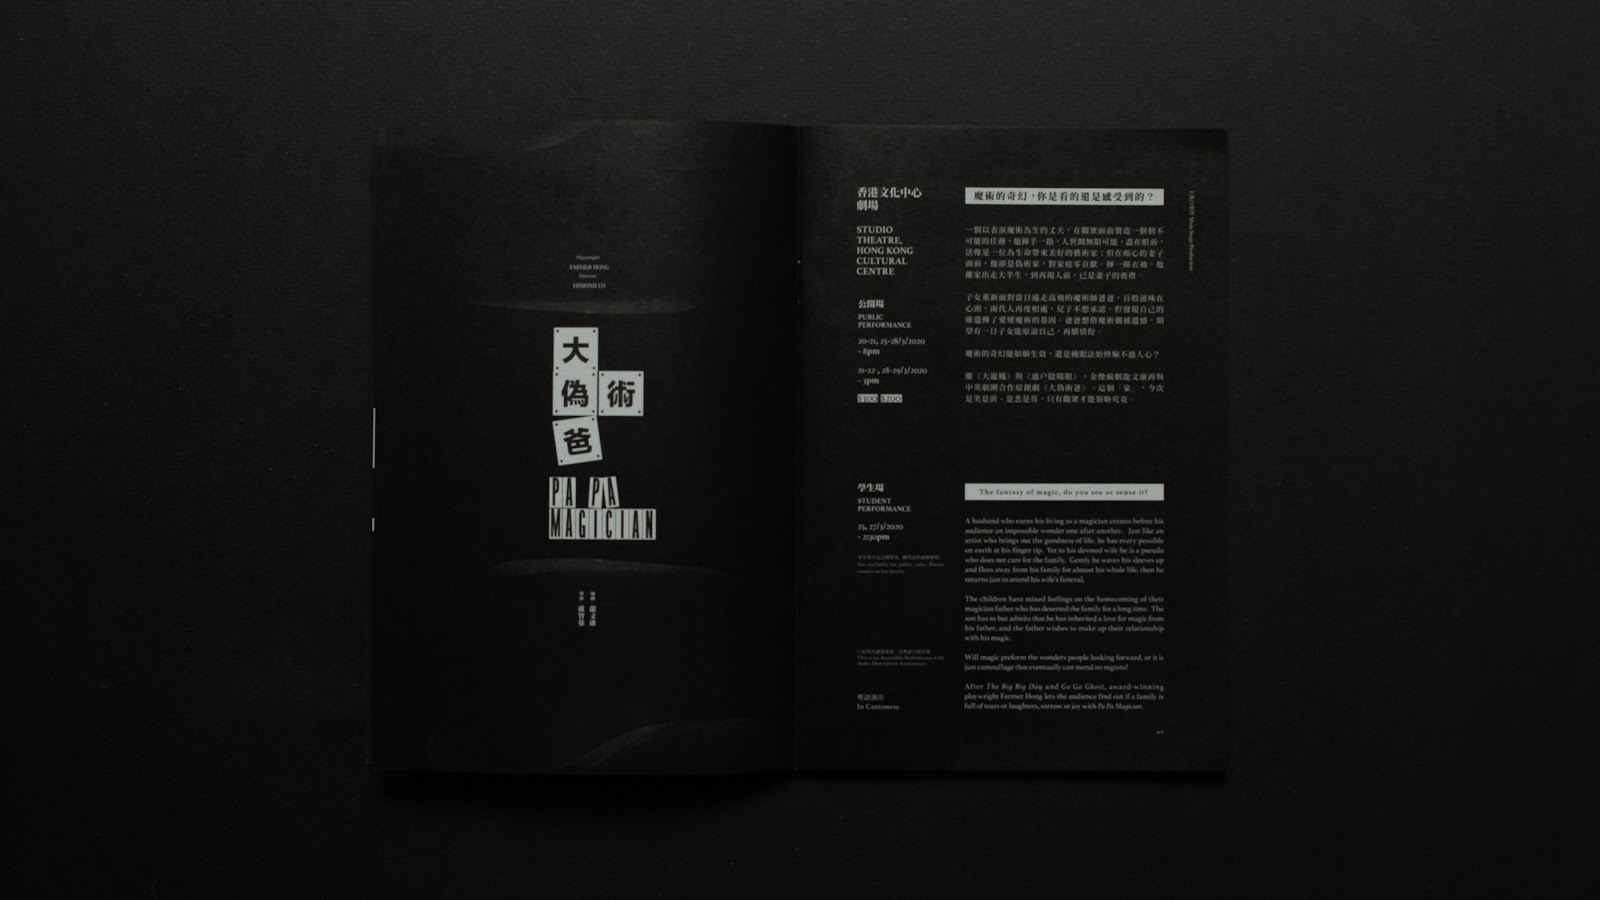 超酷的黑色主题 中英剧团(Chung Ying Theatre Company)演出画册设计